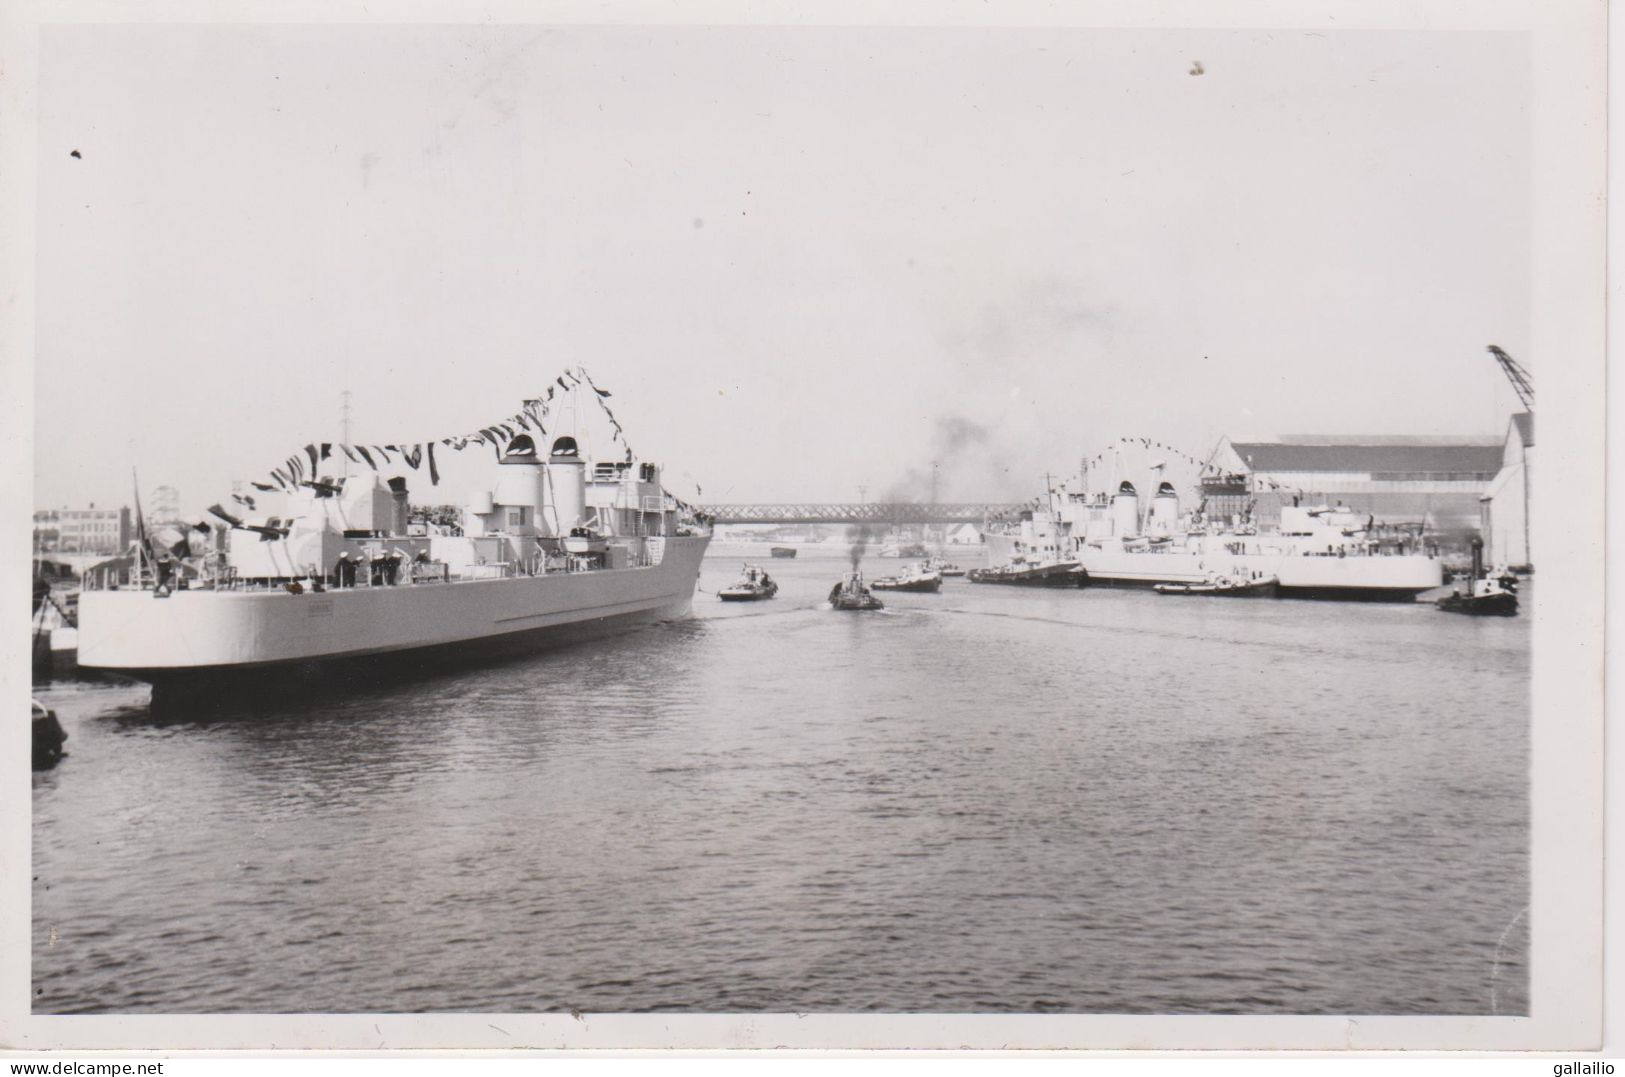 PHOTO PRESSE LES ESCORTEURS KERSAINT ET SURCOUF A LORIENT OCTOBRE 1953 FORMAT 13 X 18 CMS - Boats